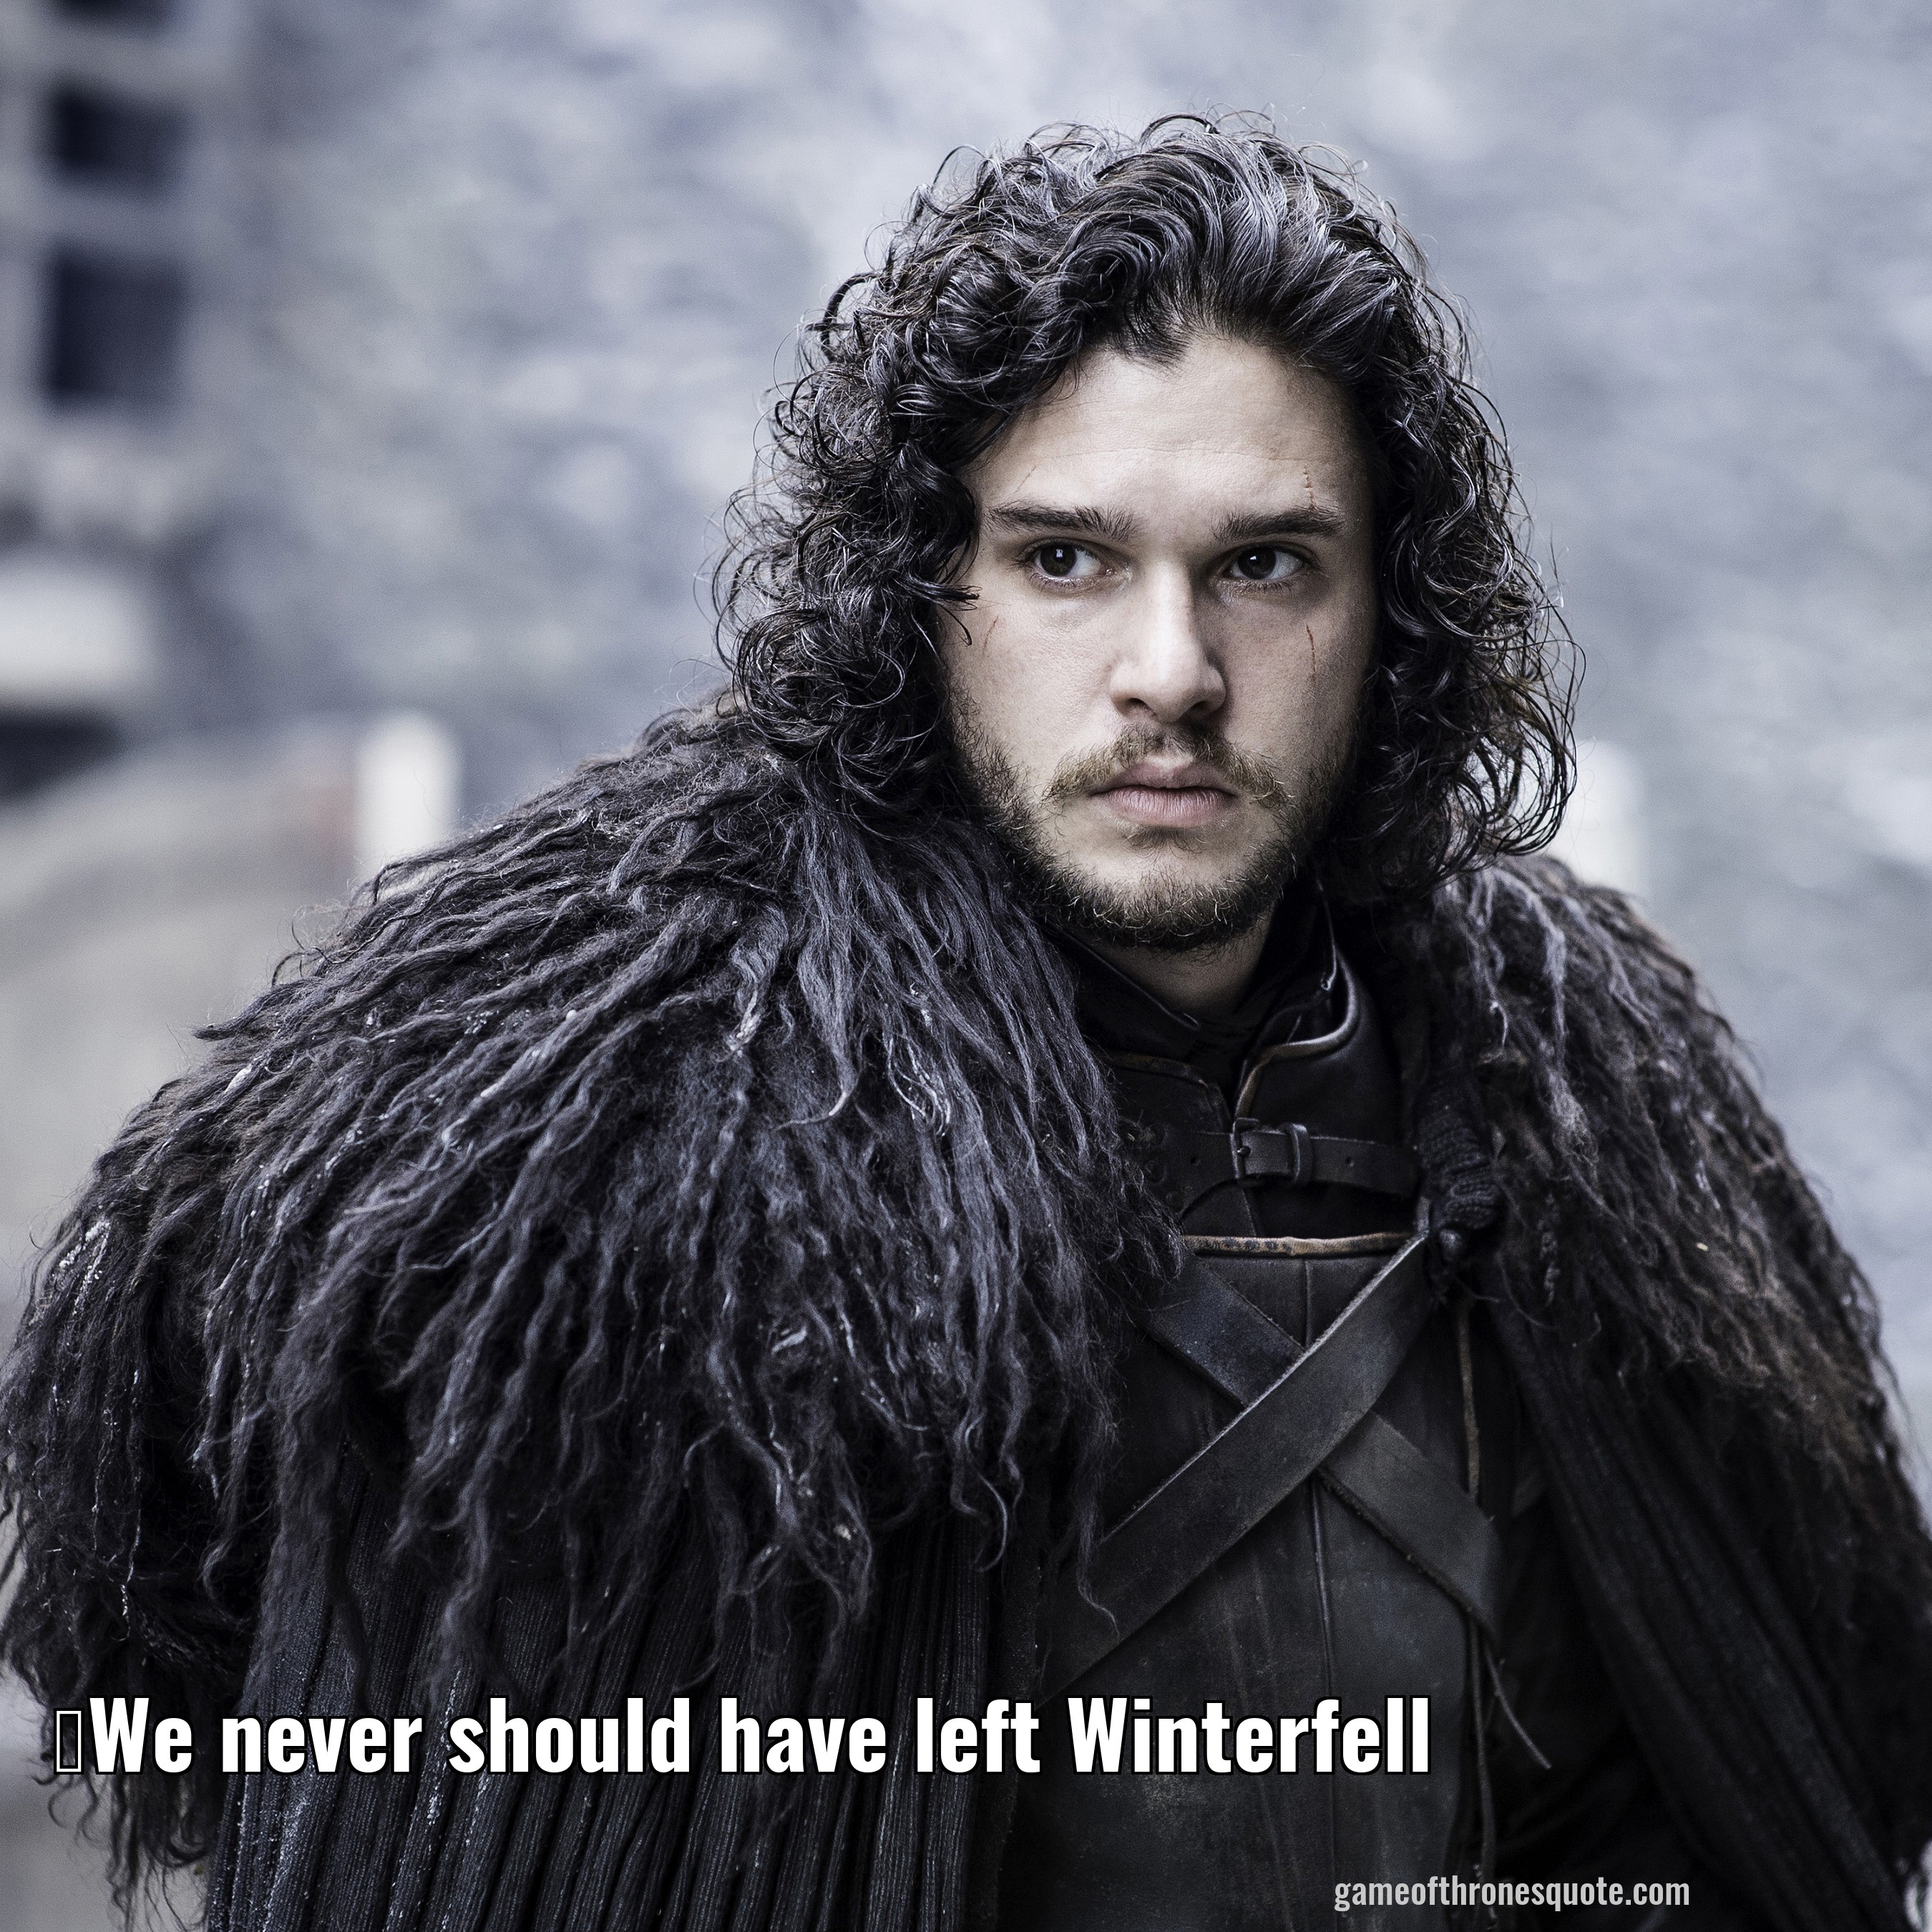 We never should have left Winterfell